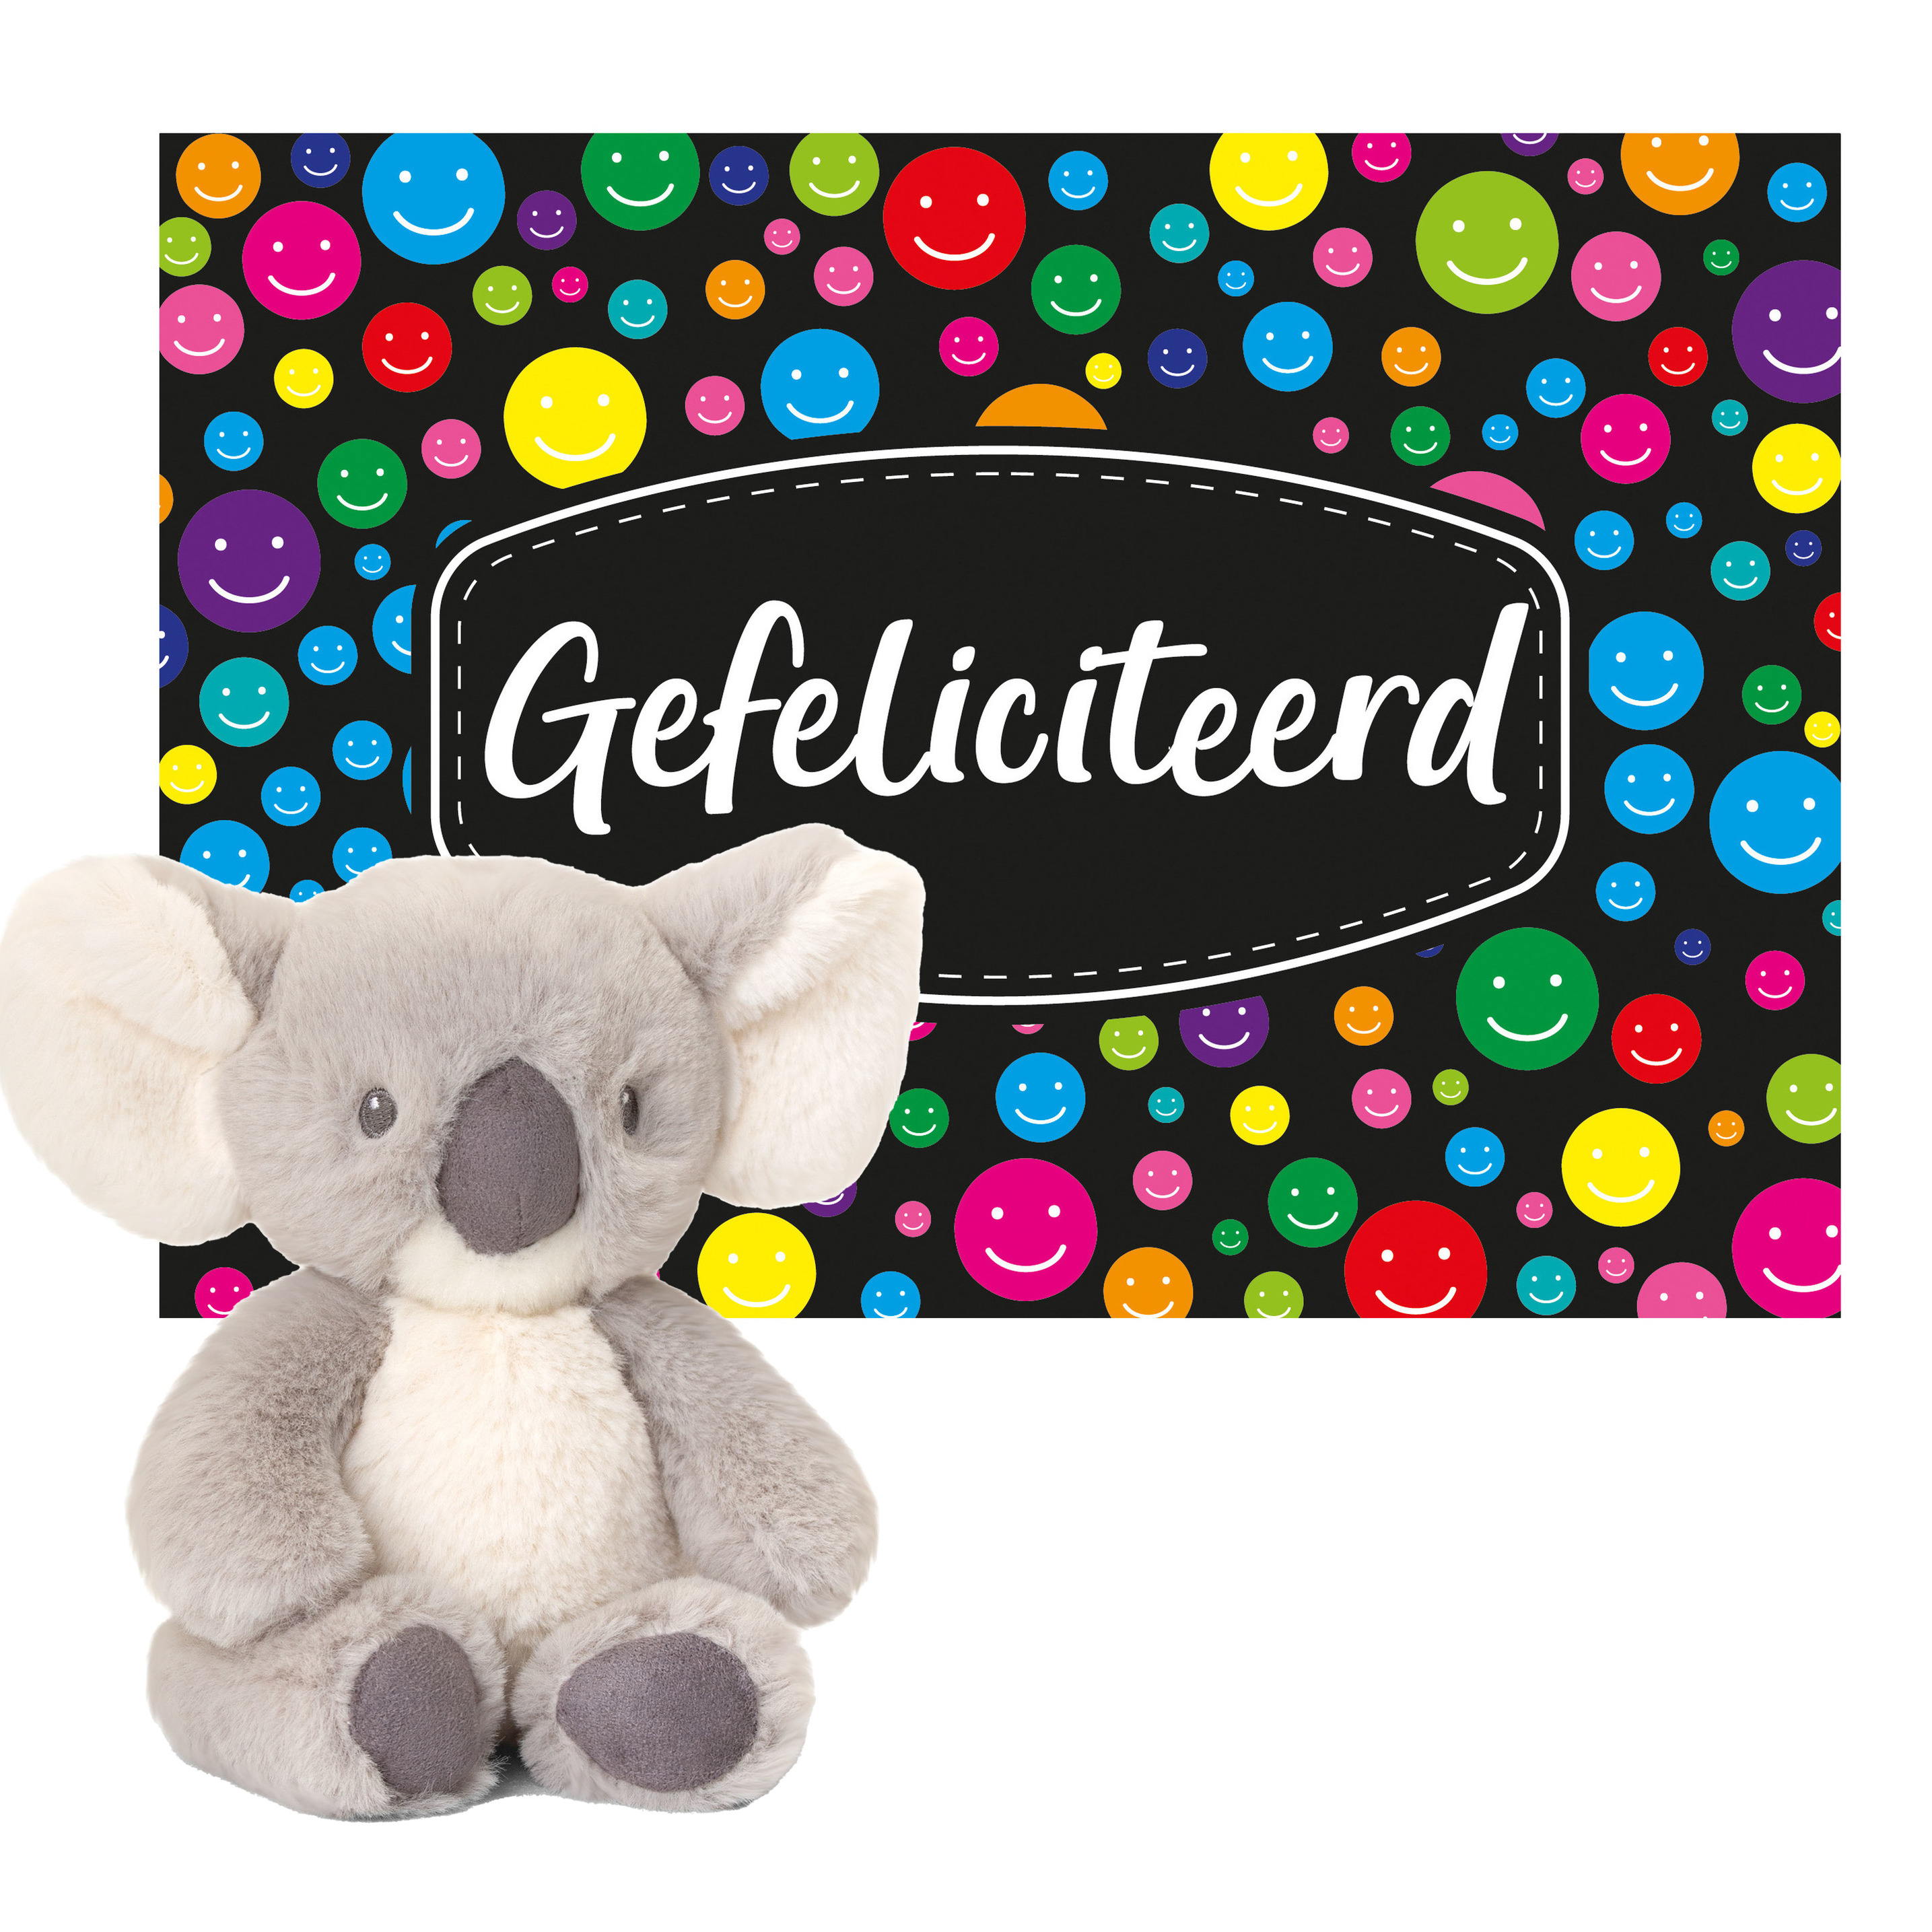 Keel toys Cadeaukaart Gefeliciteerd met knuffeldier koala 14 cm